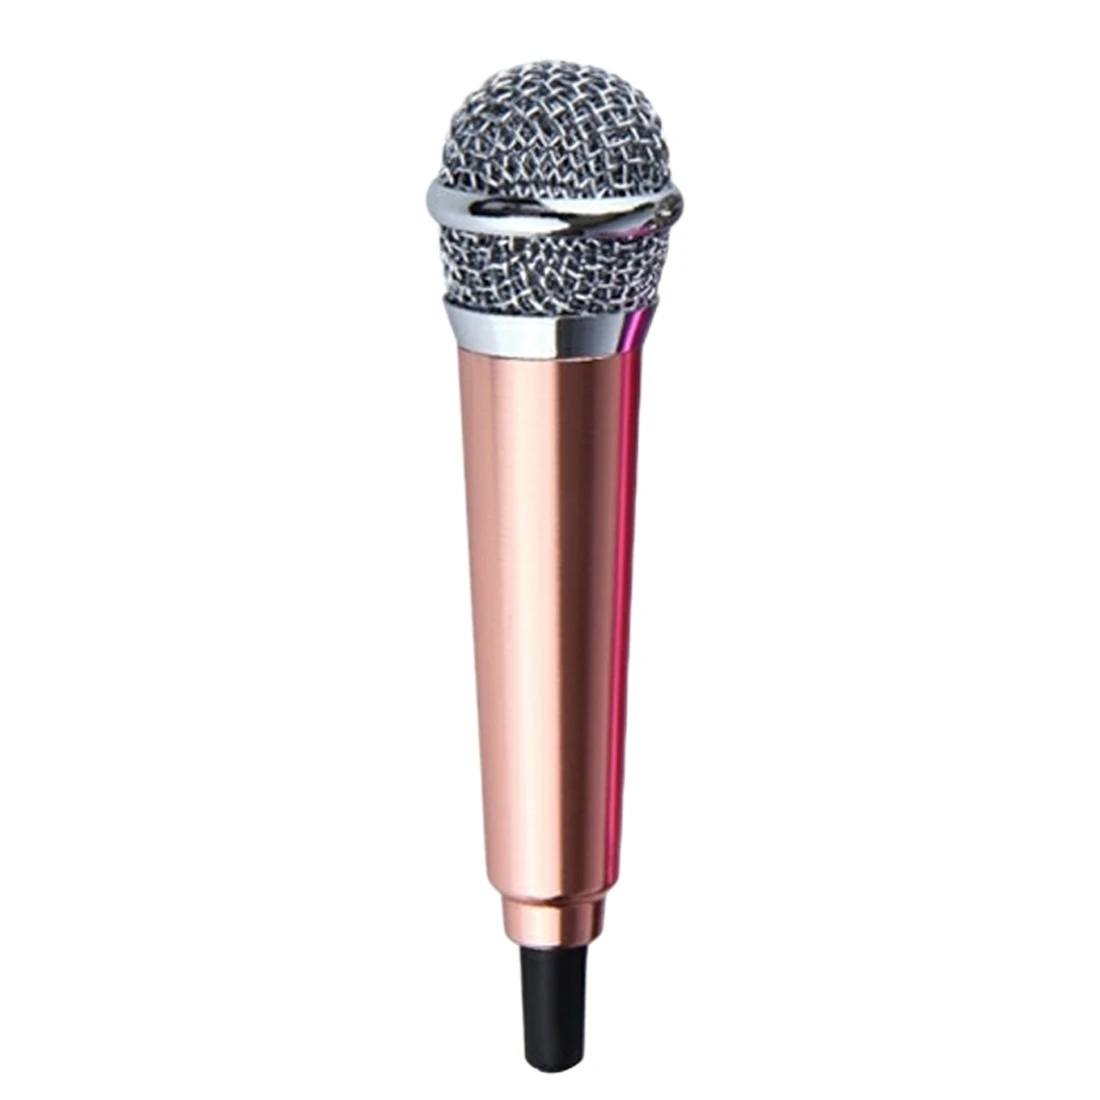 Мини микрофон для караоке KTV 4 цвета портативный сотового телефона 3 5 мм стерео - Фото №1